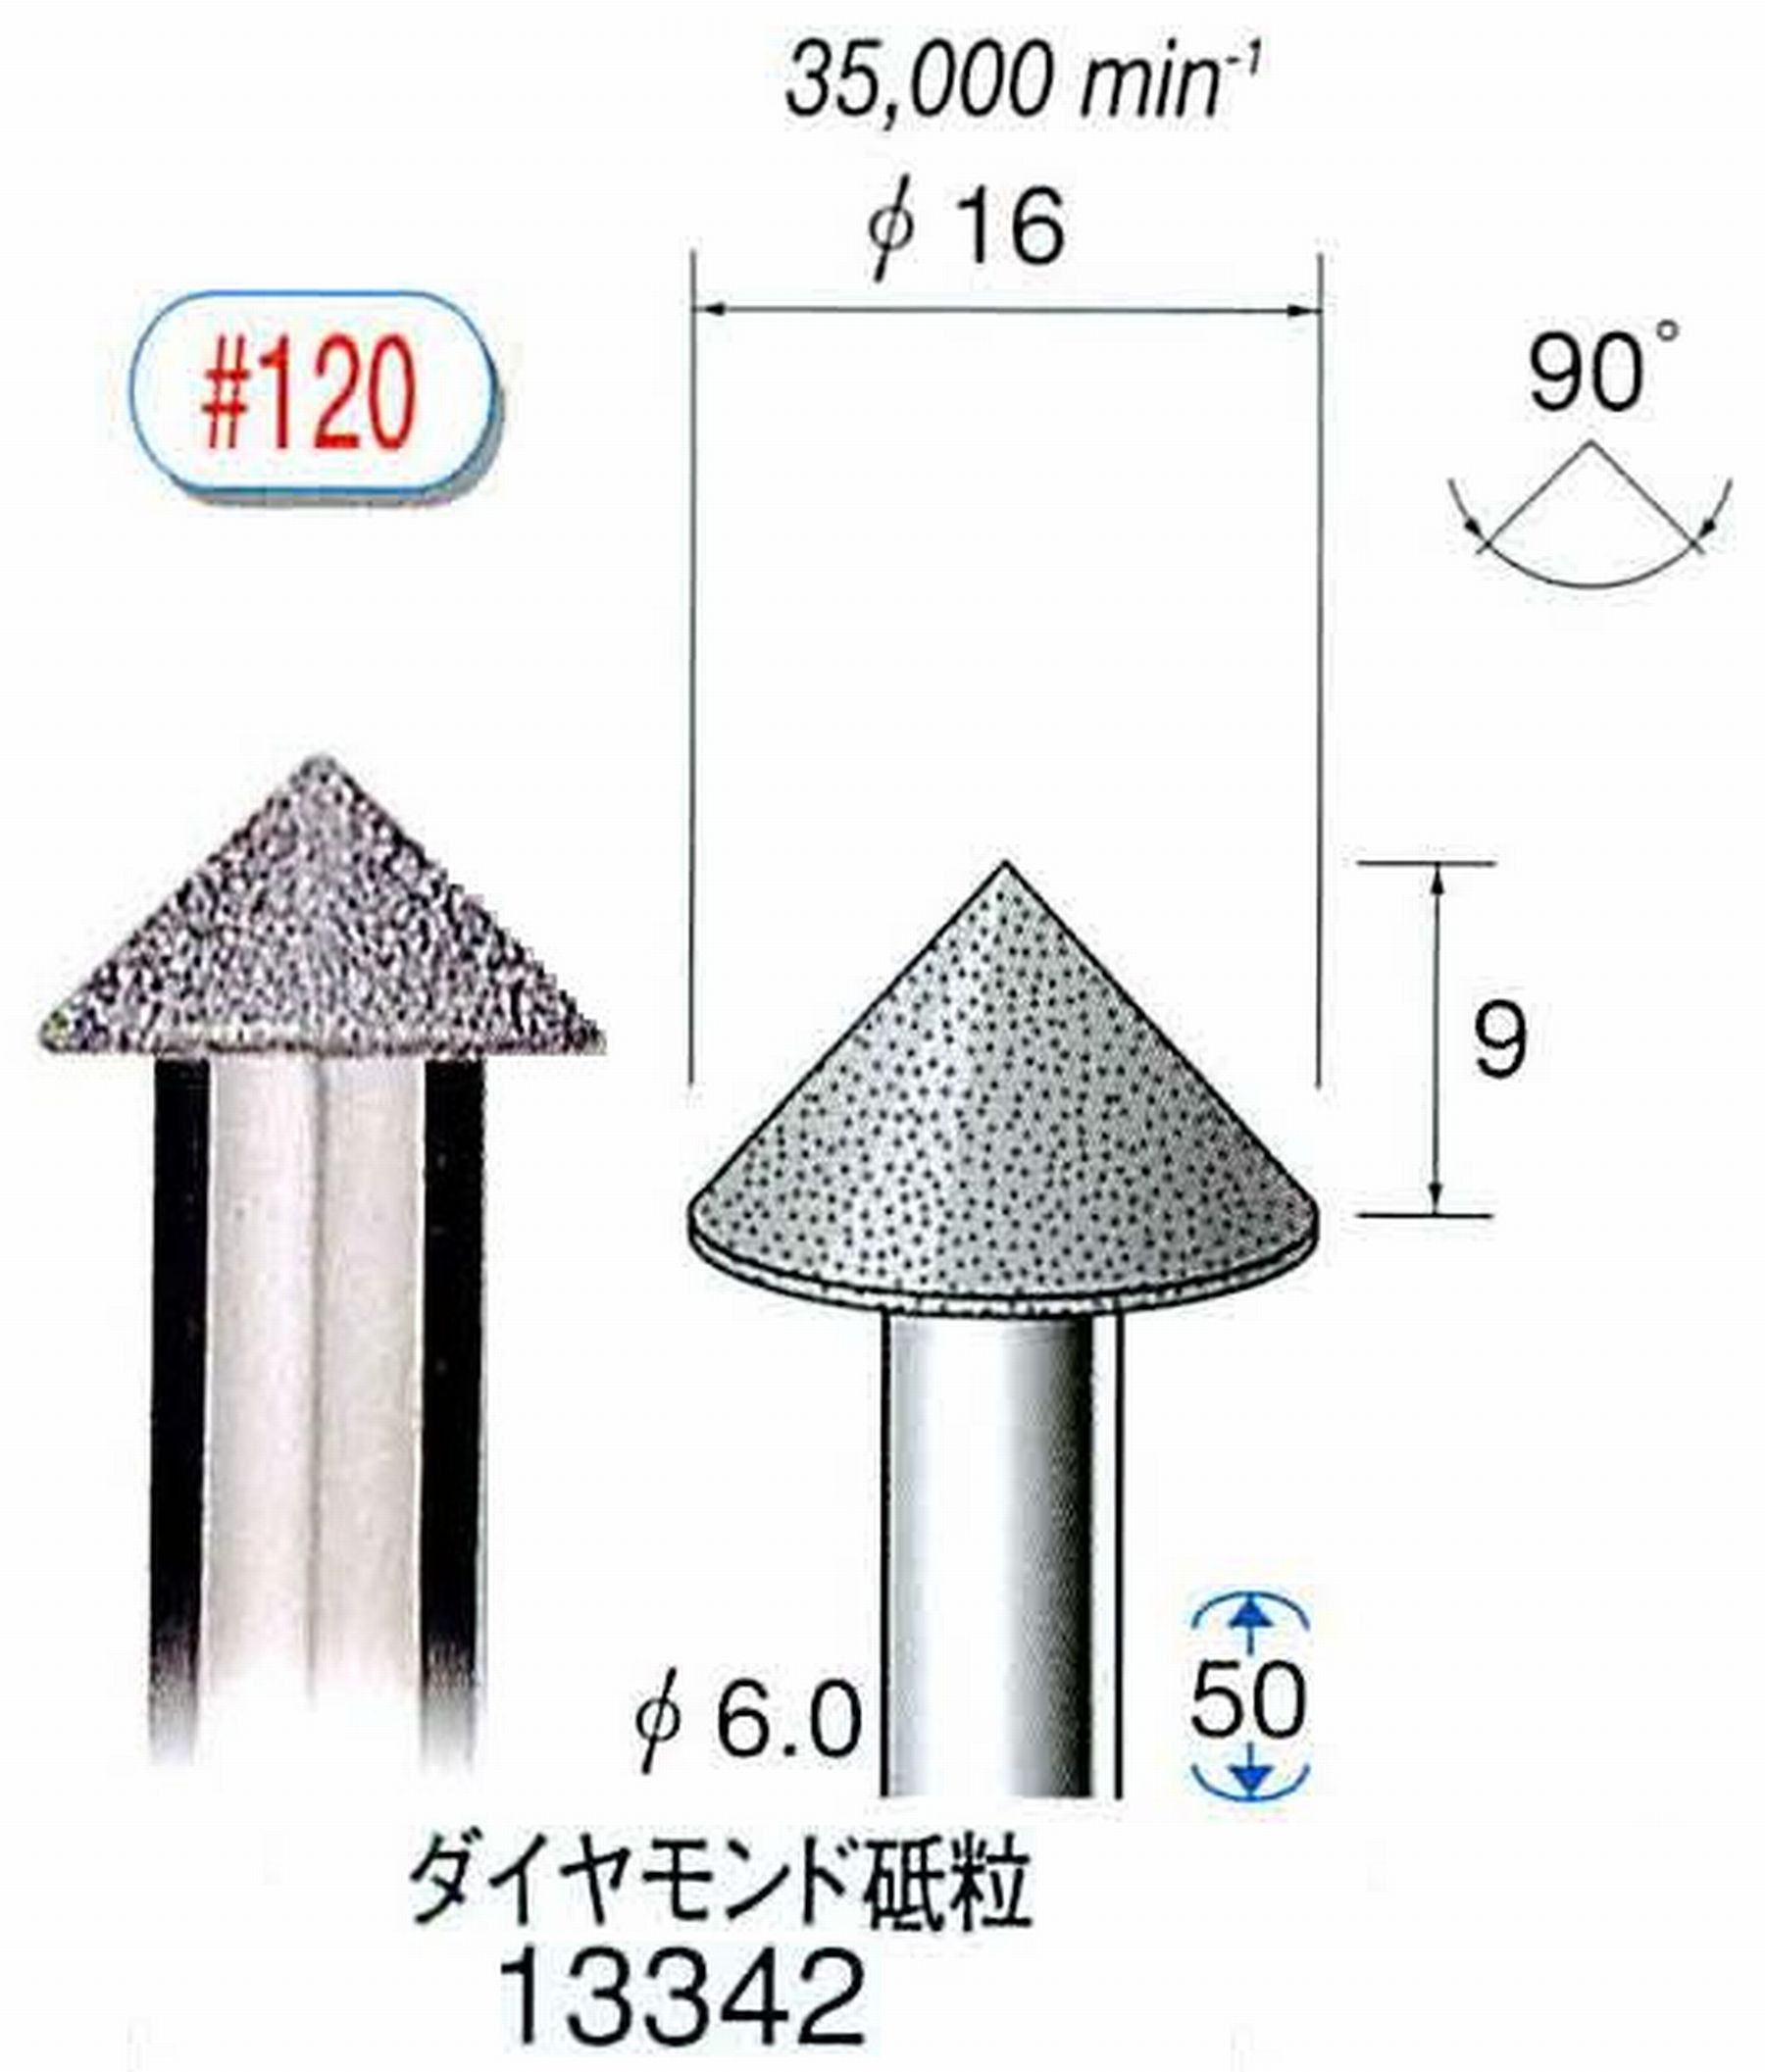 ナカニシ/NAKANISHI 電着ダイヤモンド ダイヤモンド砥粒 軸径(シャンク)φ6.0mm 13342